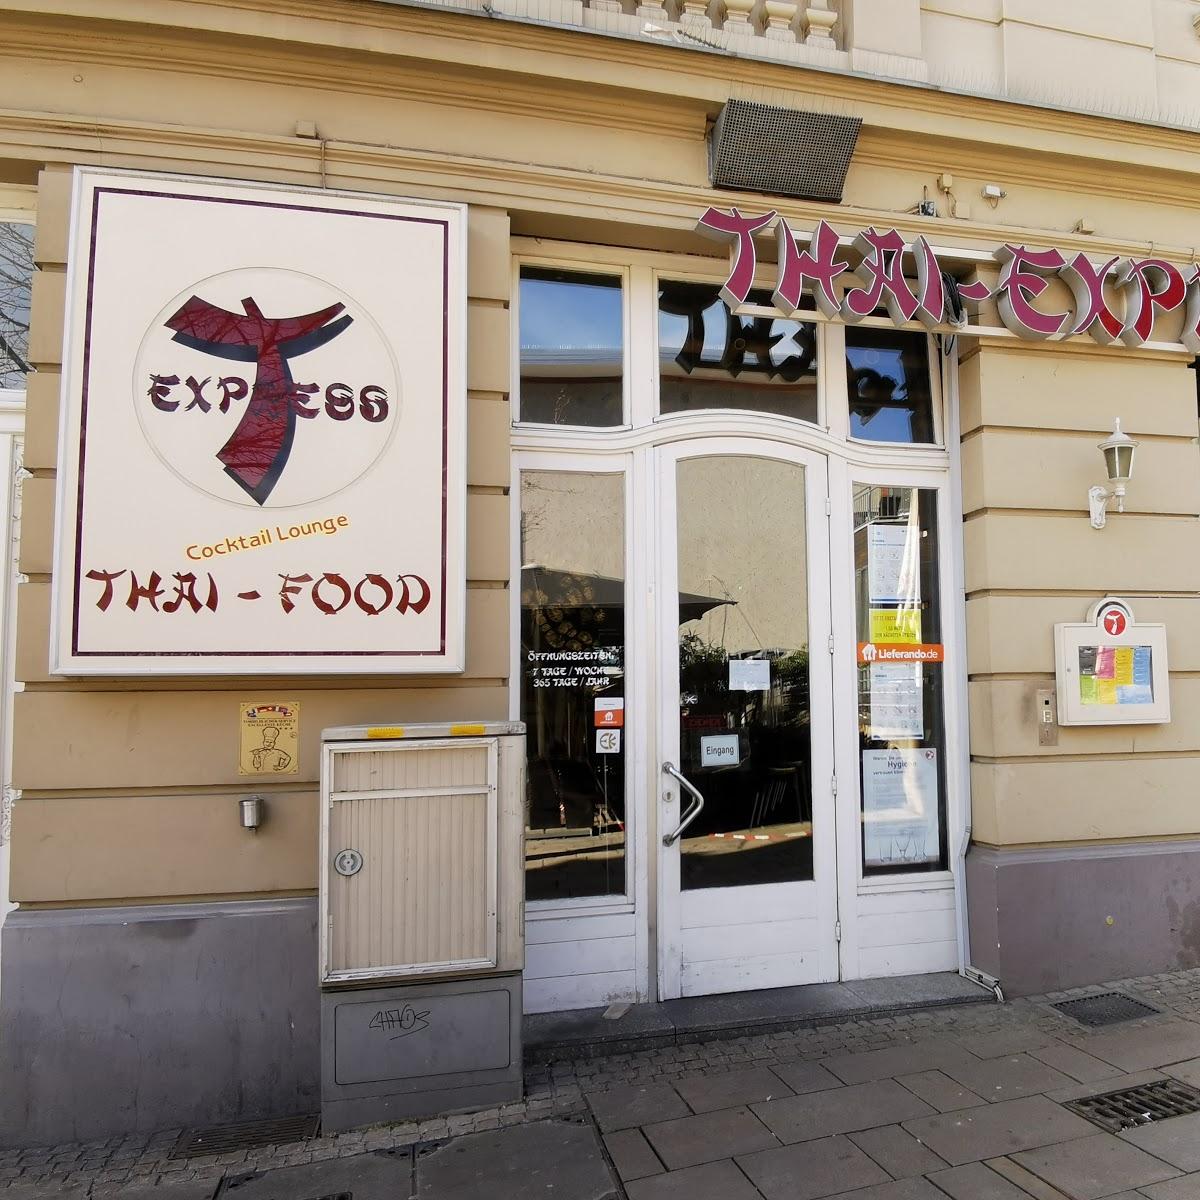 Restaurant "Thai-Express" in Wiesbaden